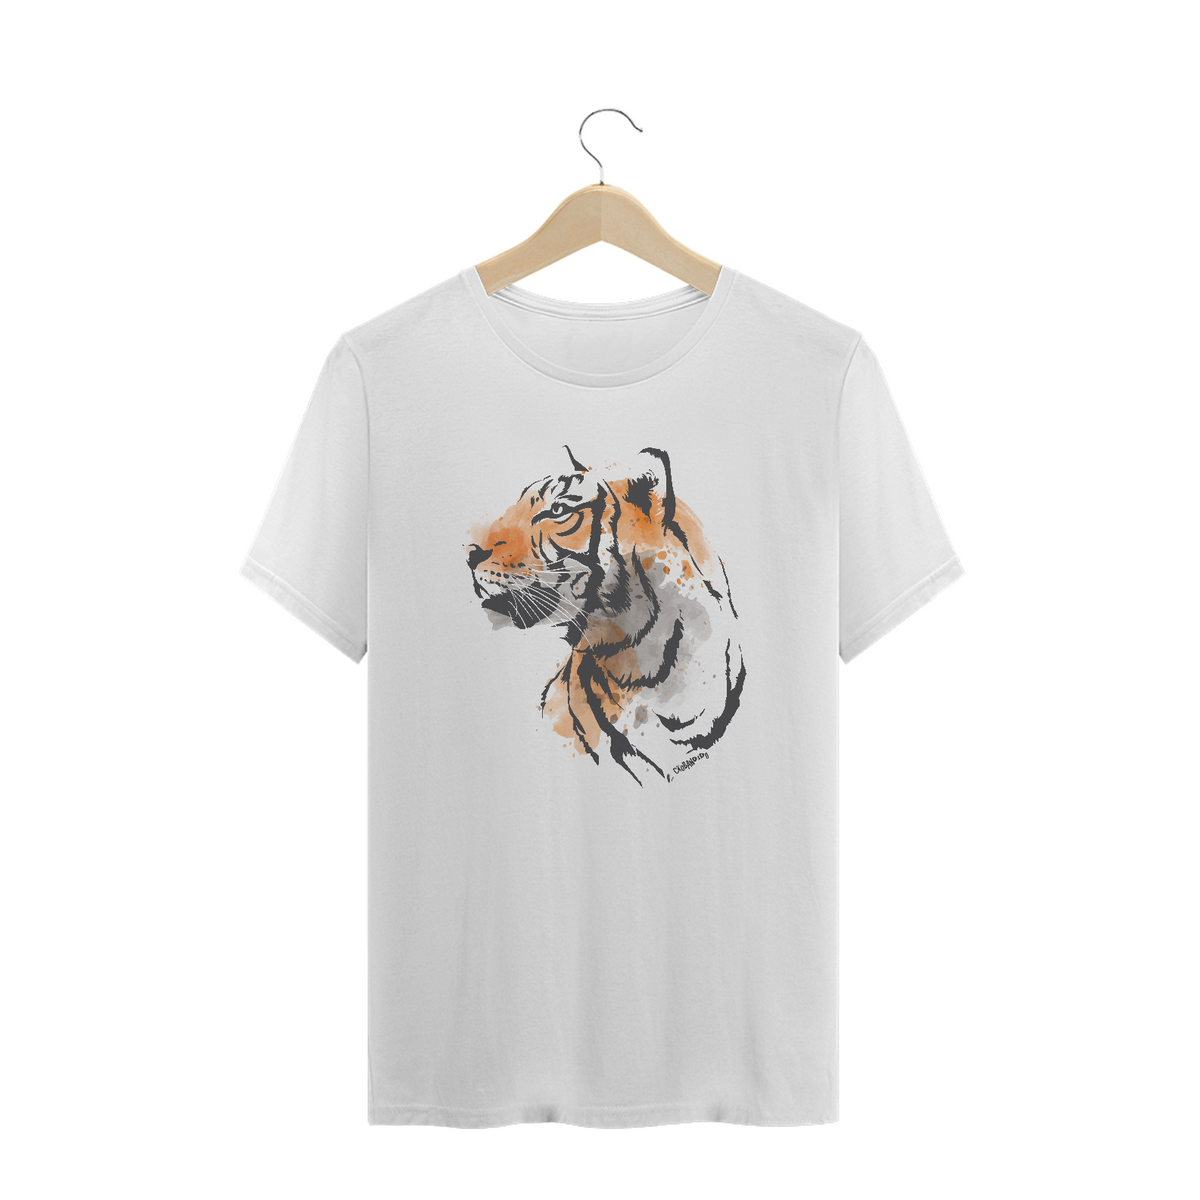 Nome do produto: Camiseta Plus Size Tigre - Modelo 2